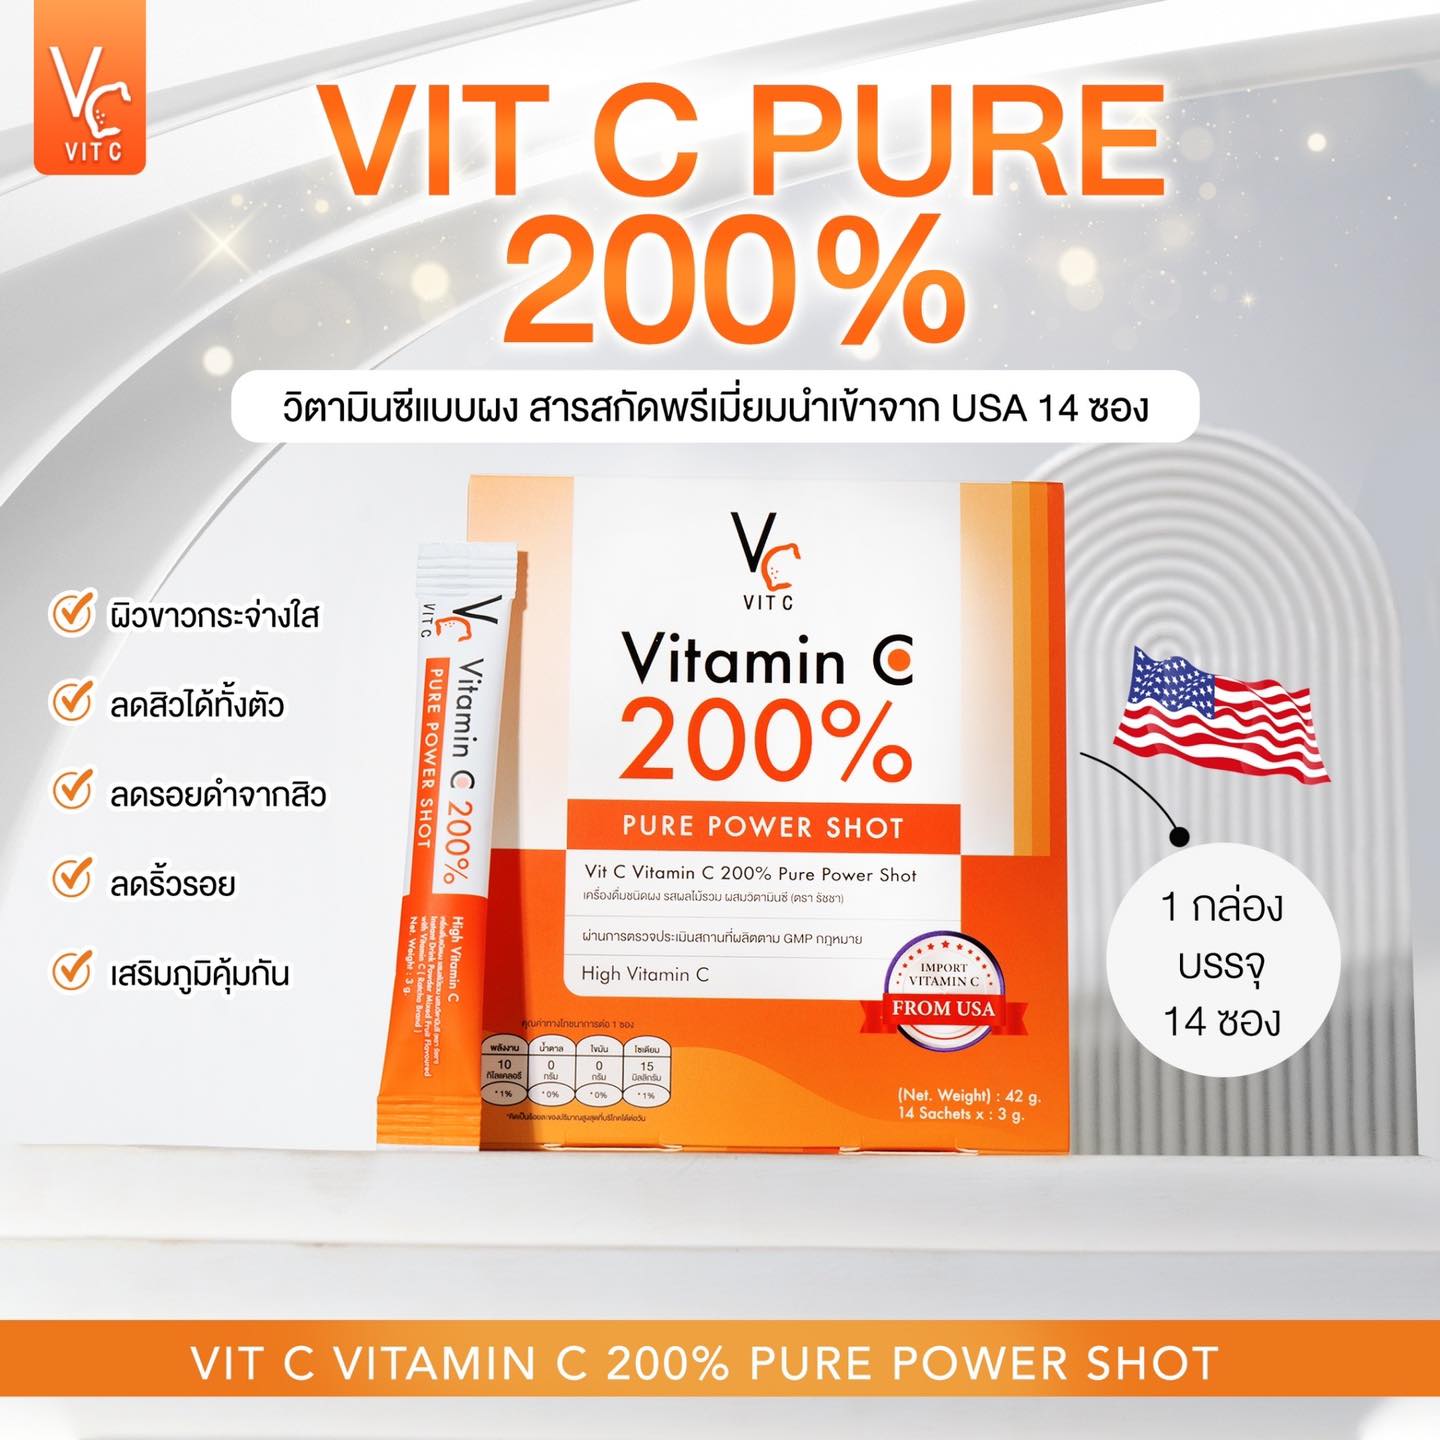 Vit C Pure Power Shot 200%